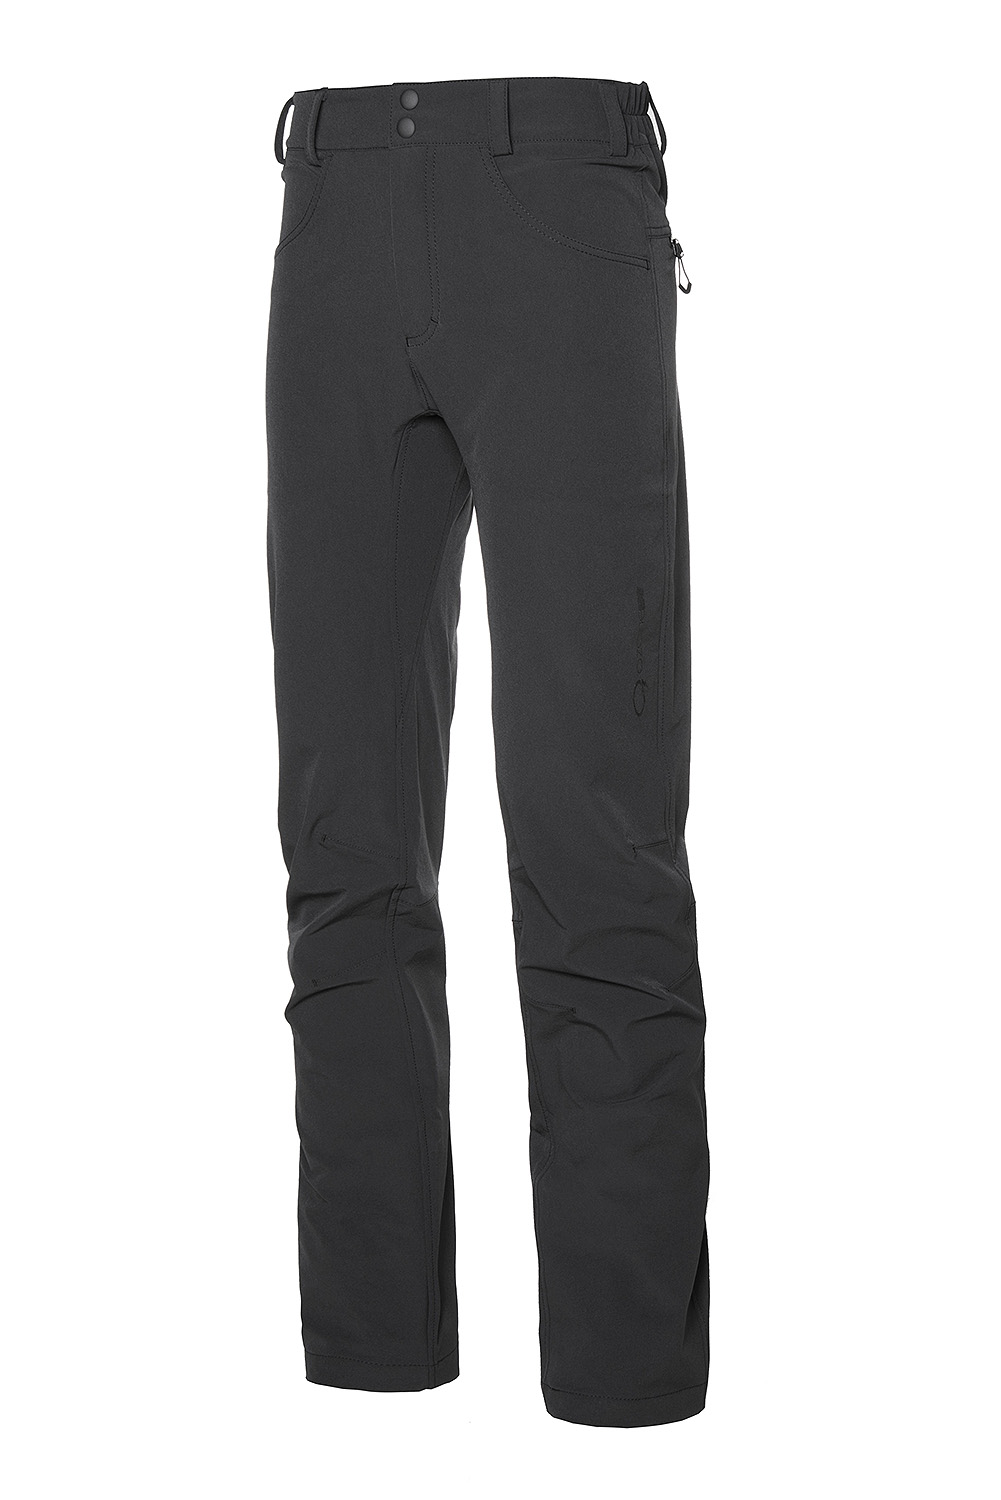 фото Спортивные брюки мужские ozone 189655 черные m